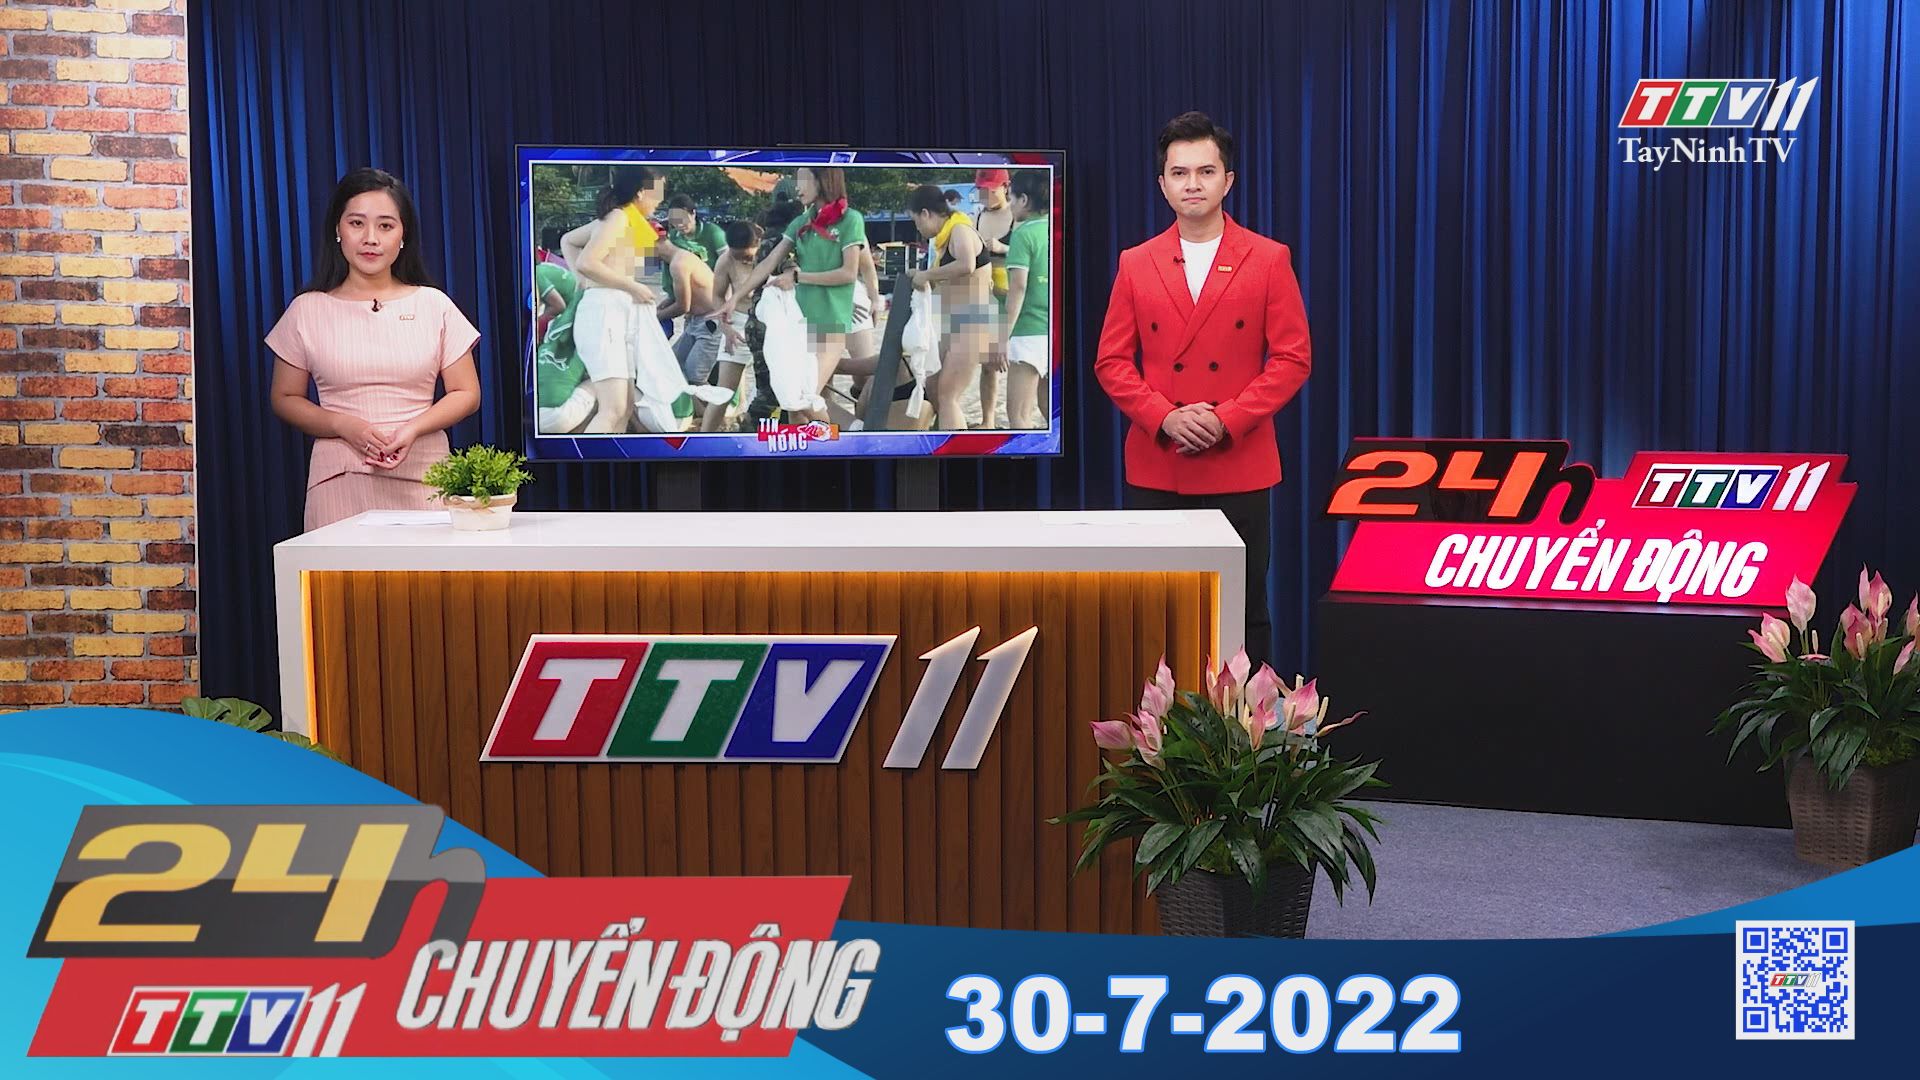 24h Chuyển động 30-7-2022 | Tin tức hôm nay | TayNinhTV